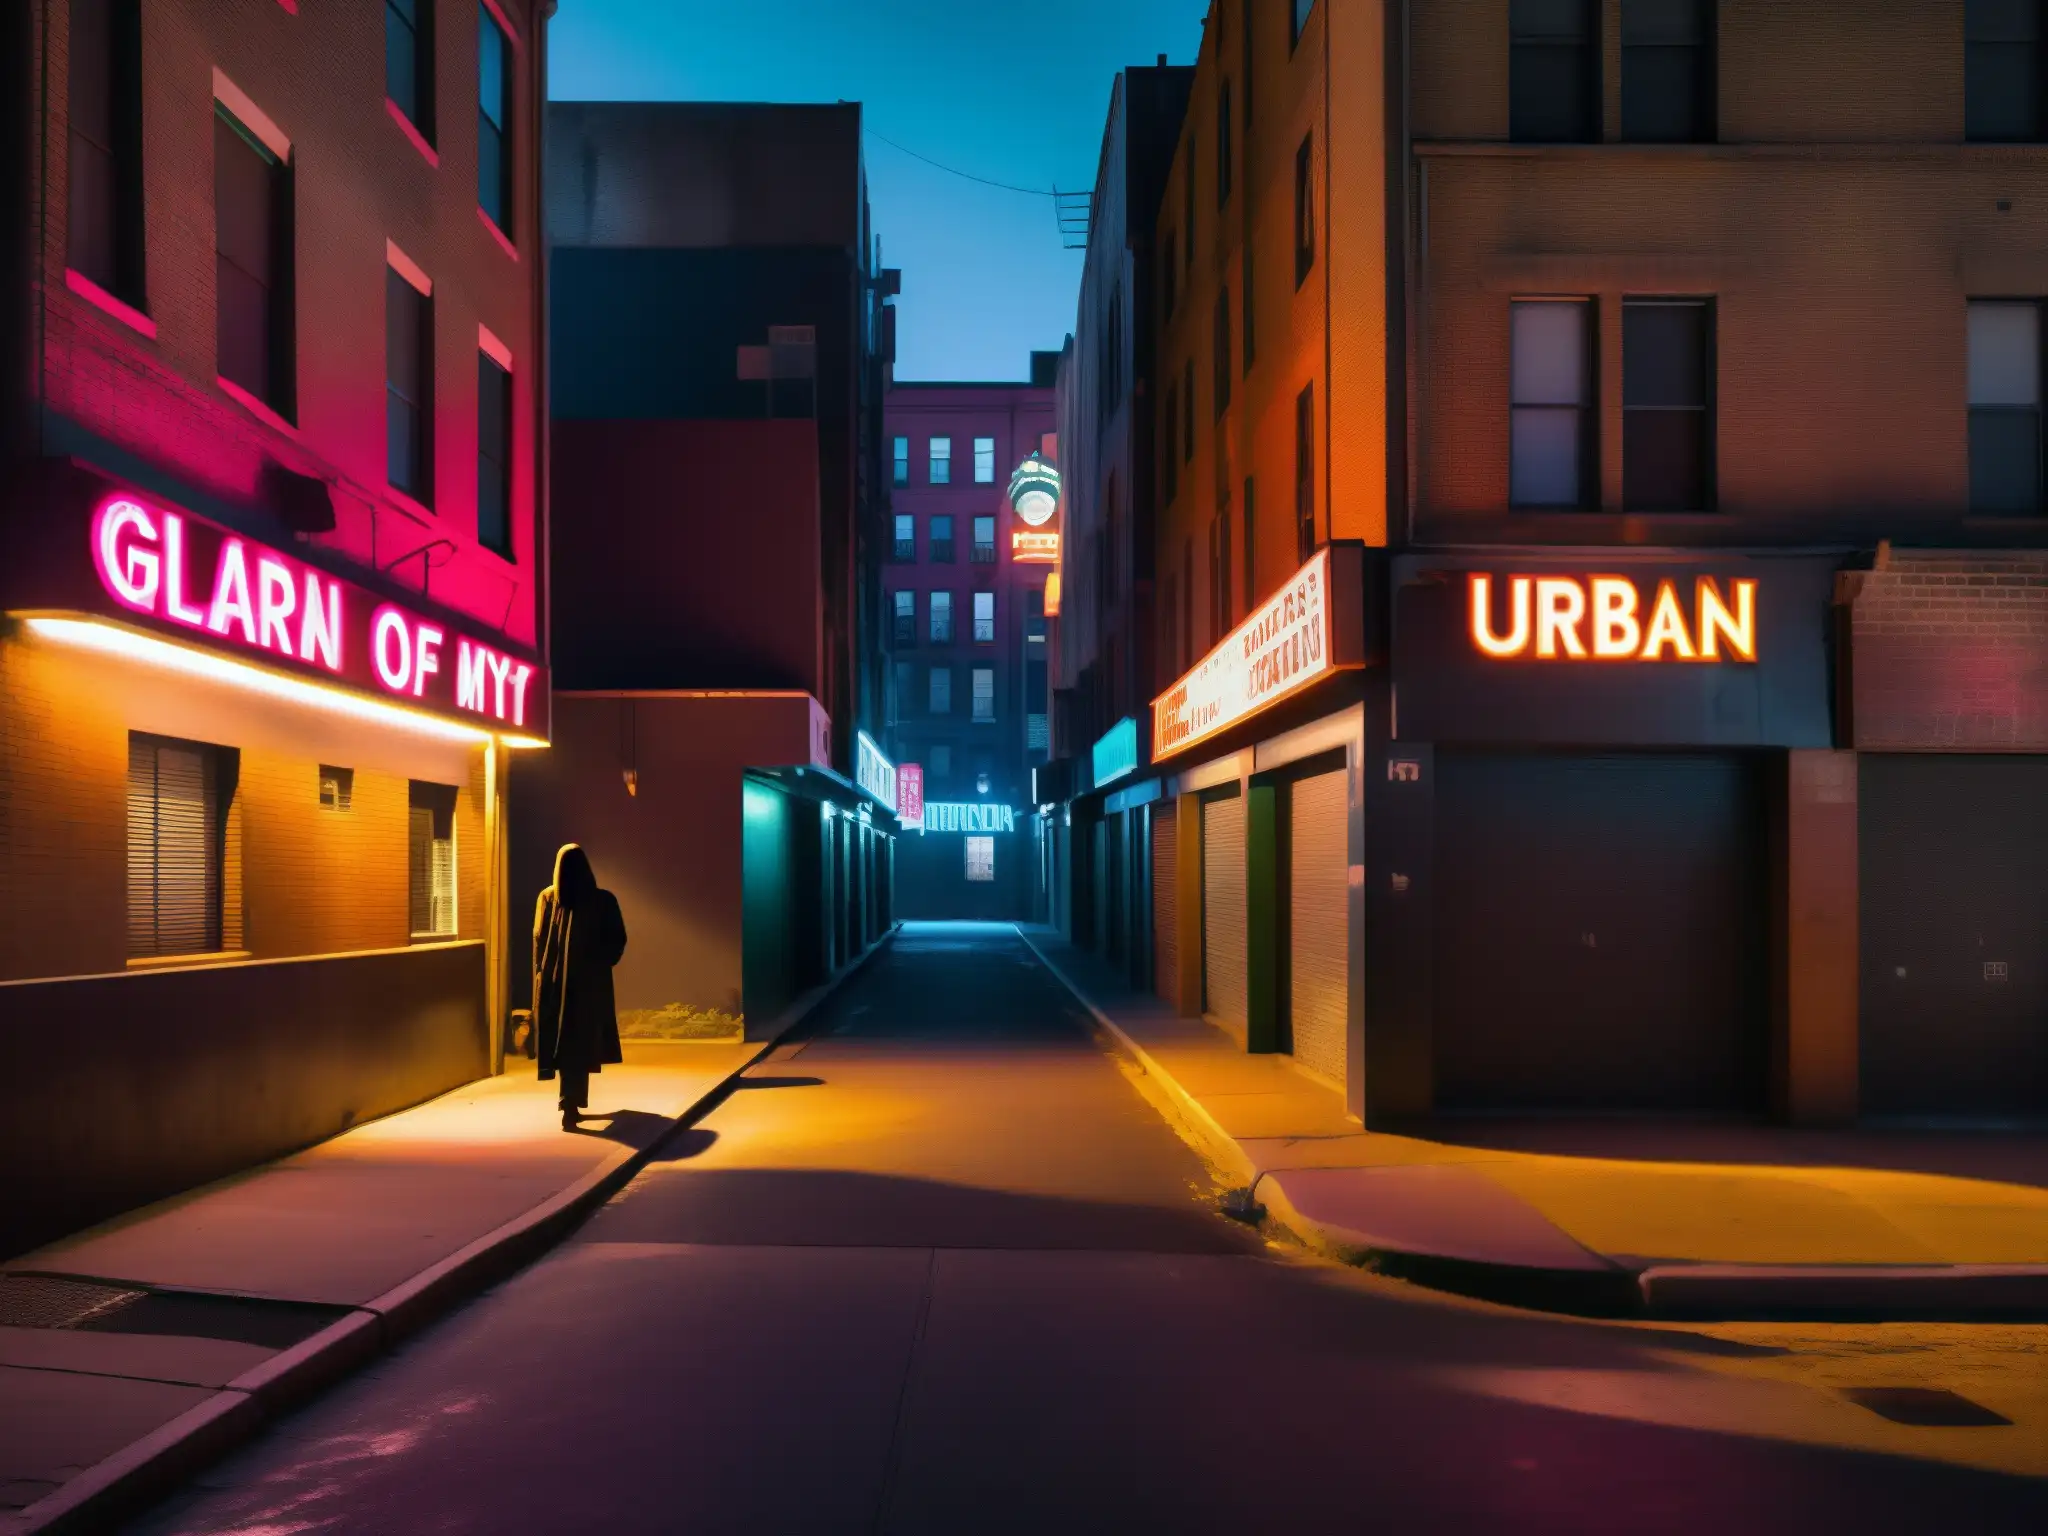 Escena nocturna en la ciudad con figuras en las sombras y paredes graffiteadas